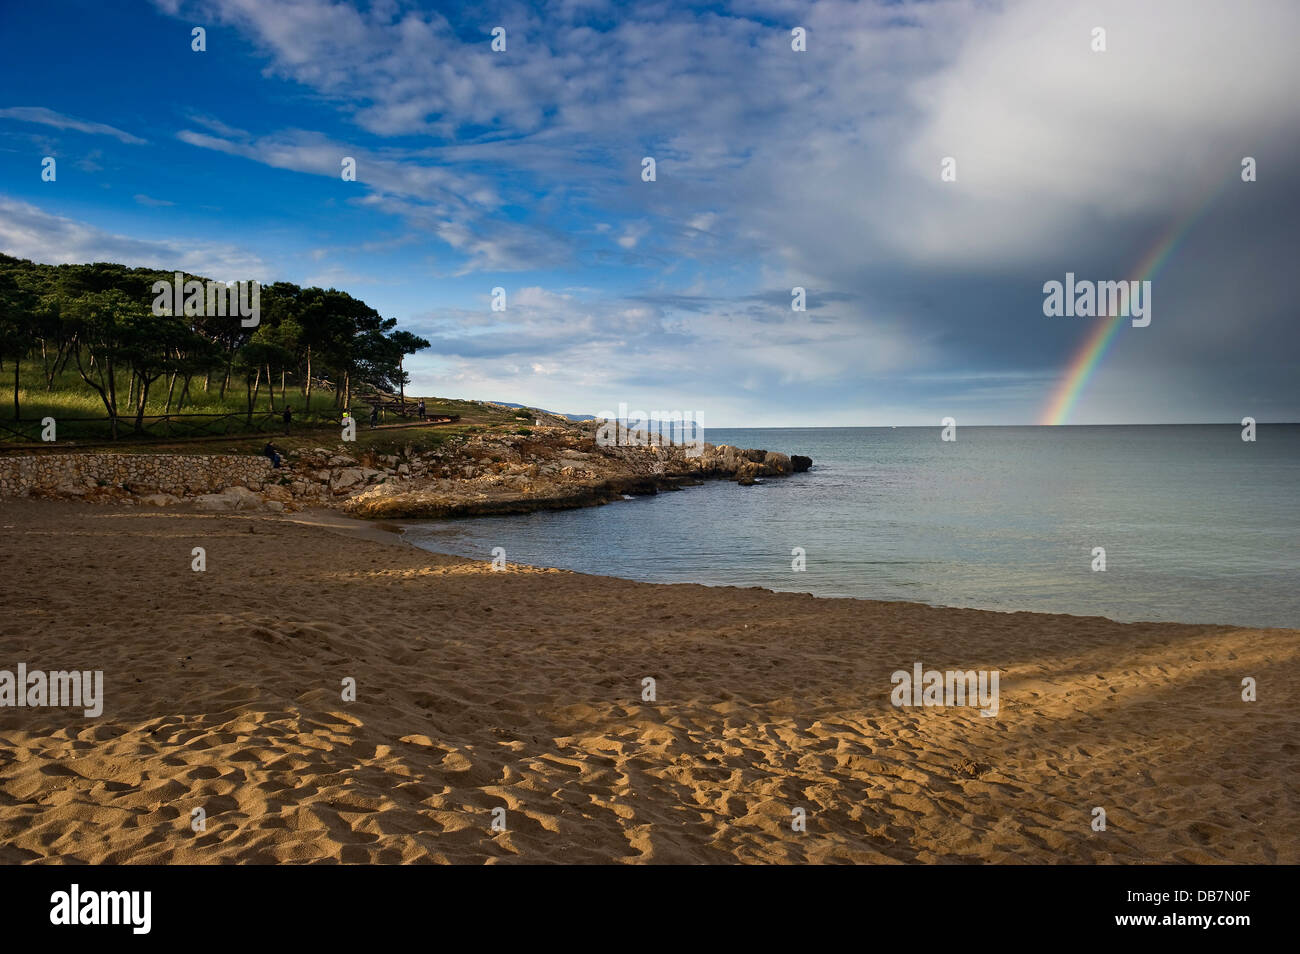 Sandy beach with rainbow over the sea Stock Photo